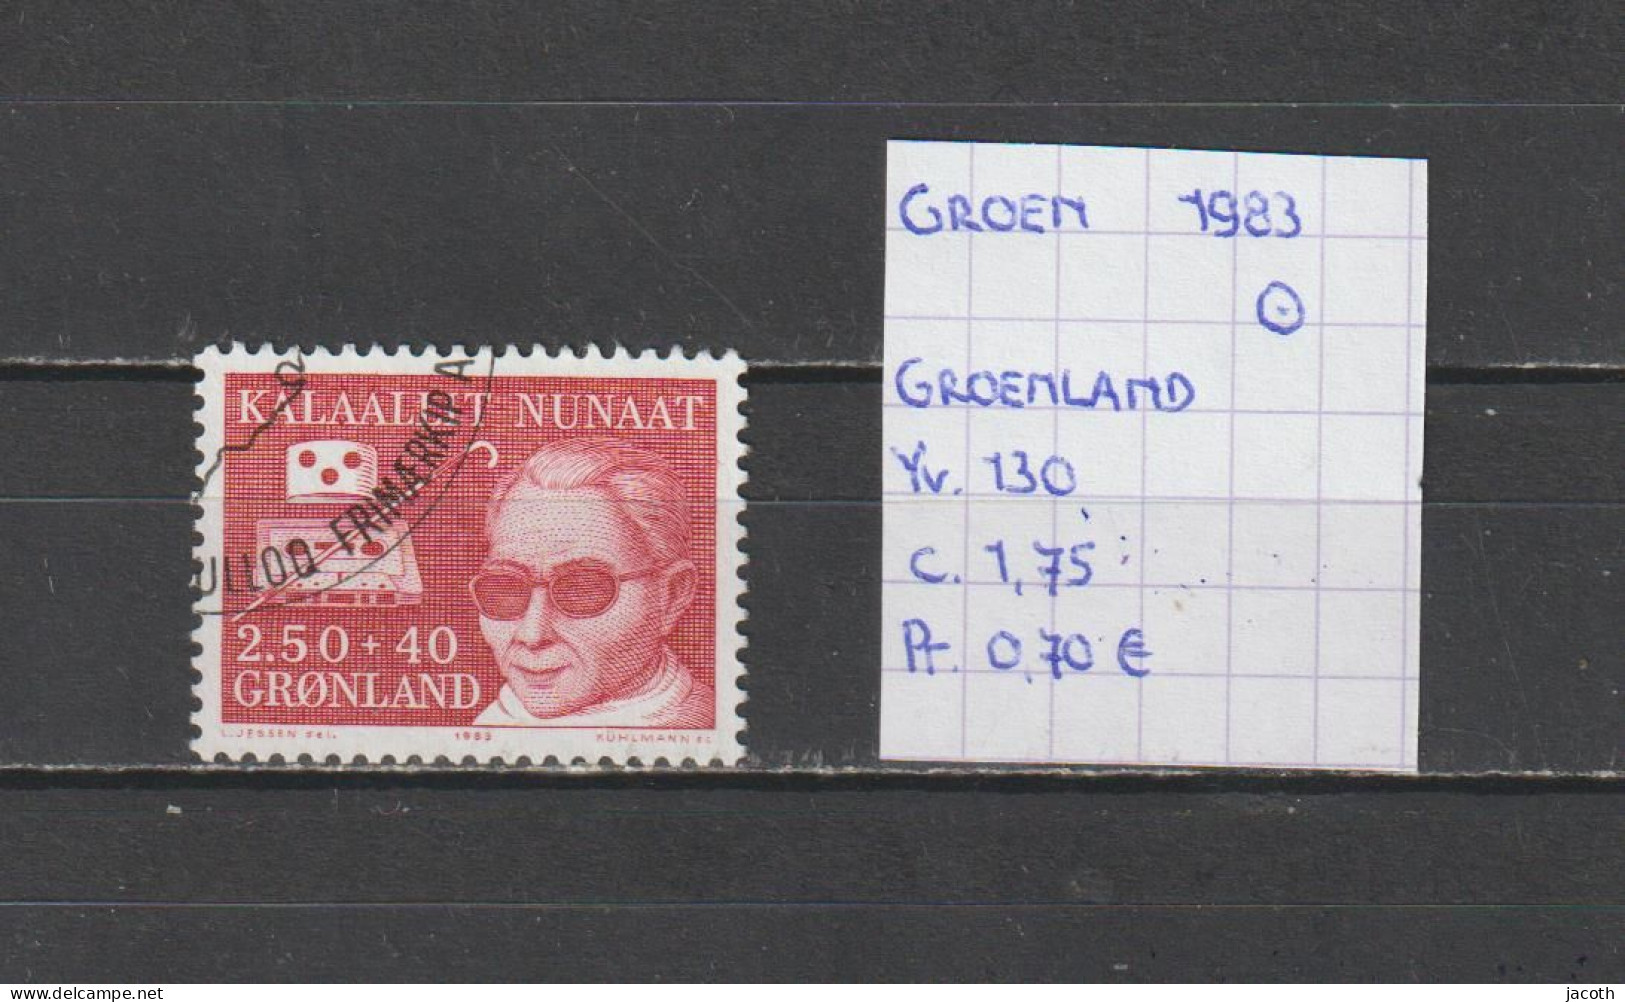 (TJ) Groenland 1983 - YT 130 (gest./obl./used) - Gebraucht